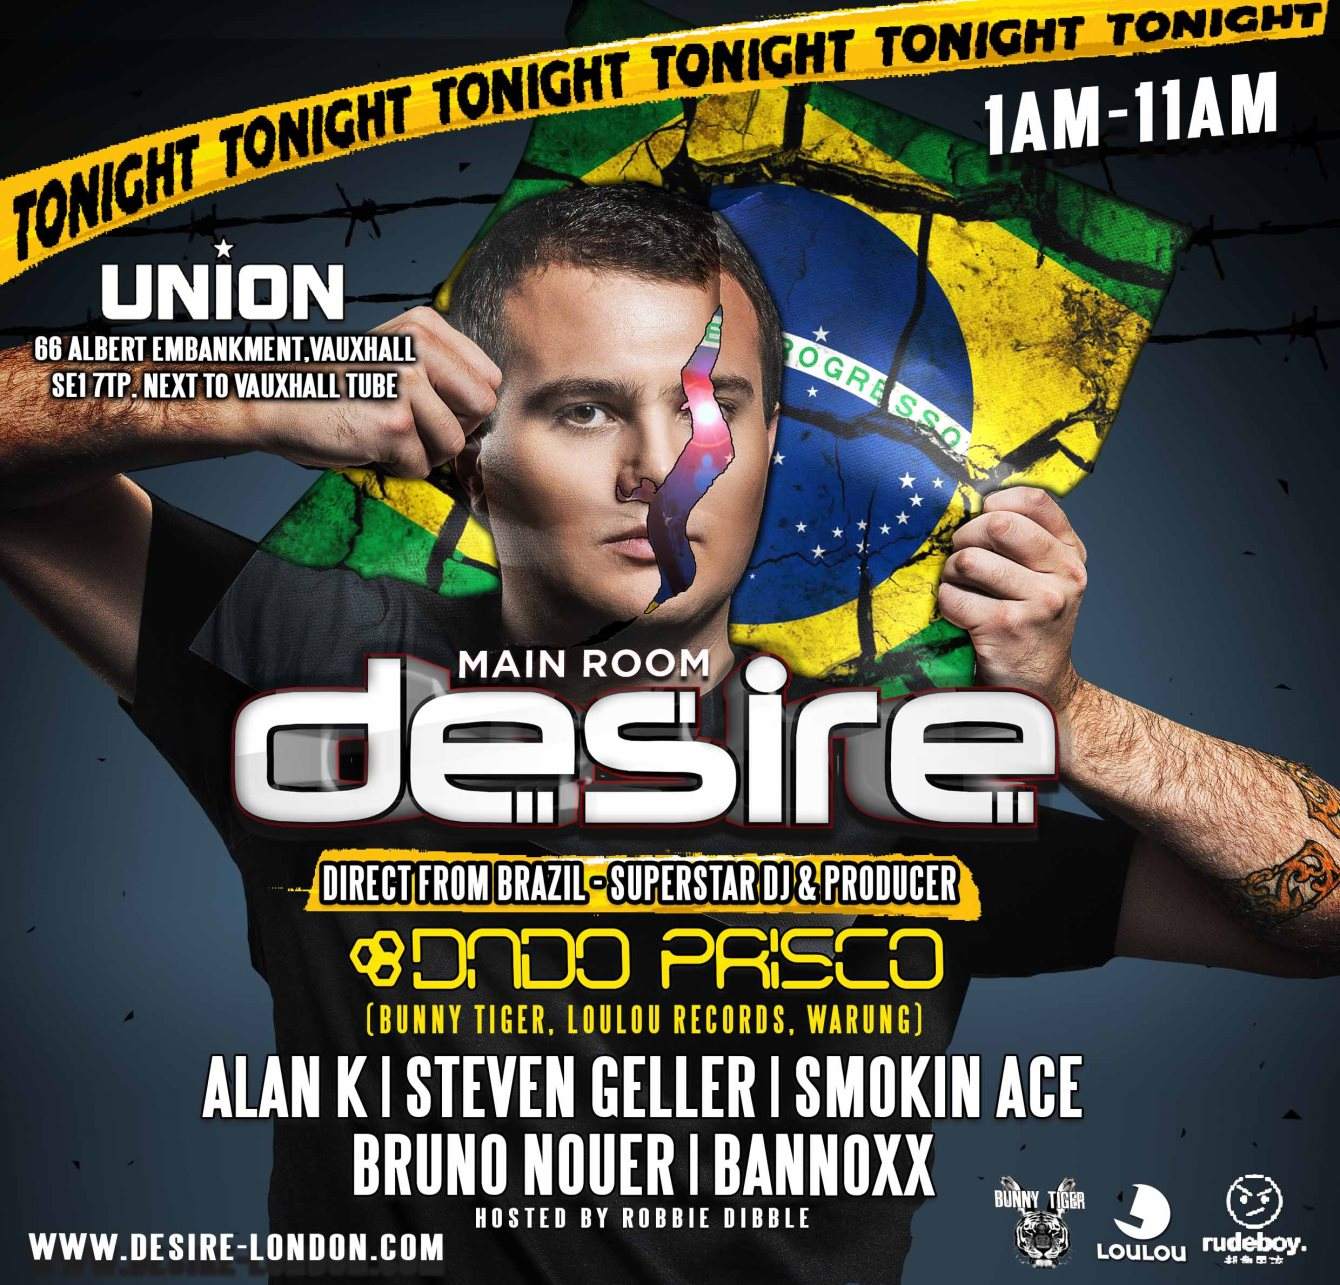 Desire Tonight - Brazilian Special - with Dado Prisco - フライヤー裏